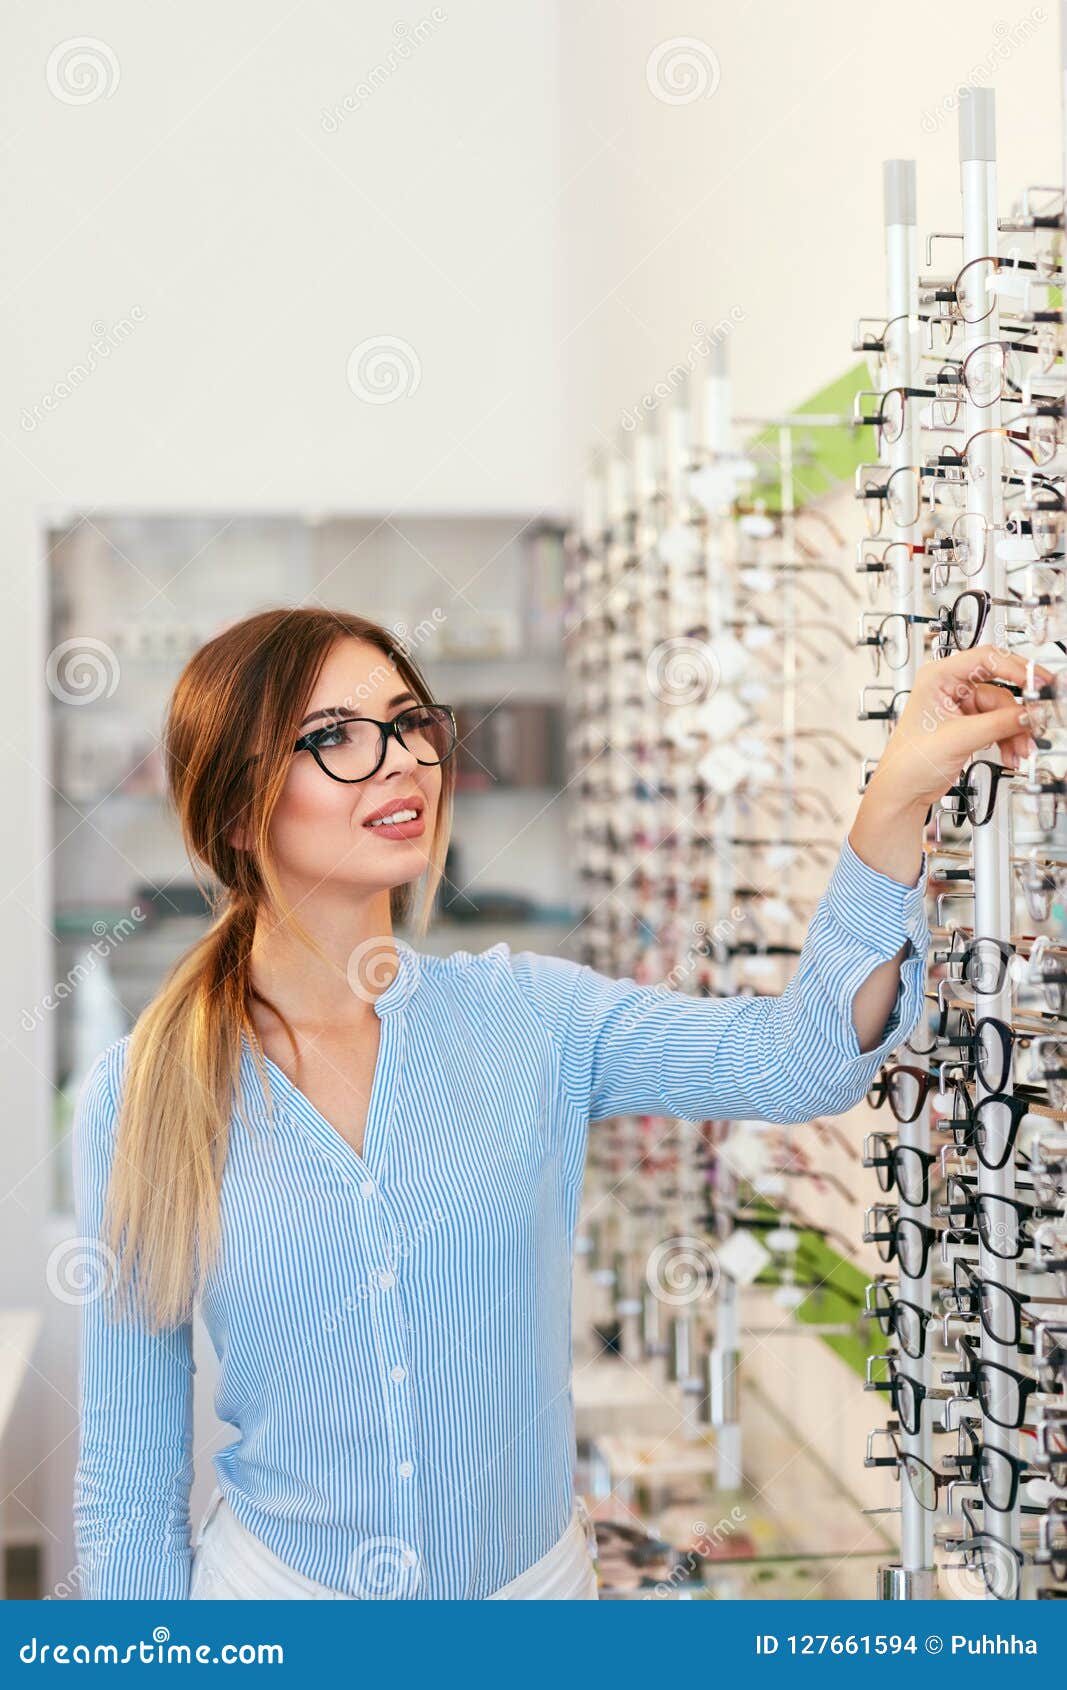 Eyeglasses Store. Woman Choosing Glasses for Eyesight Correction Stock